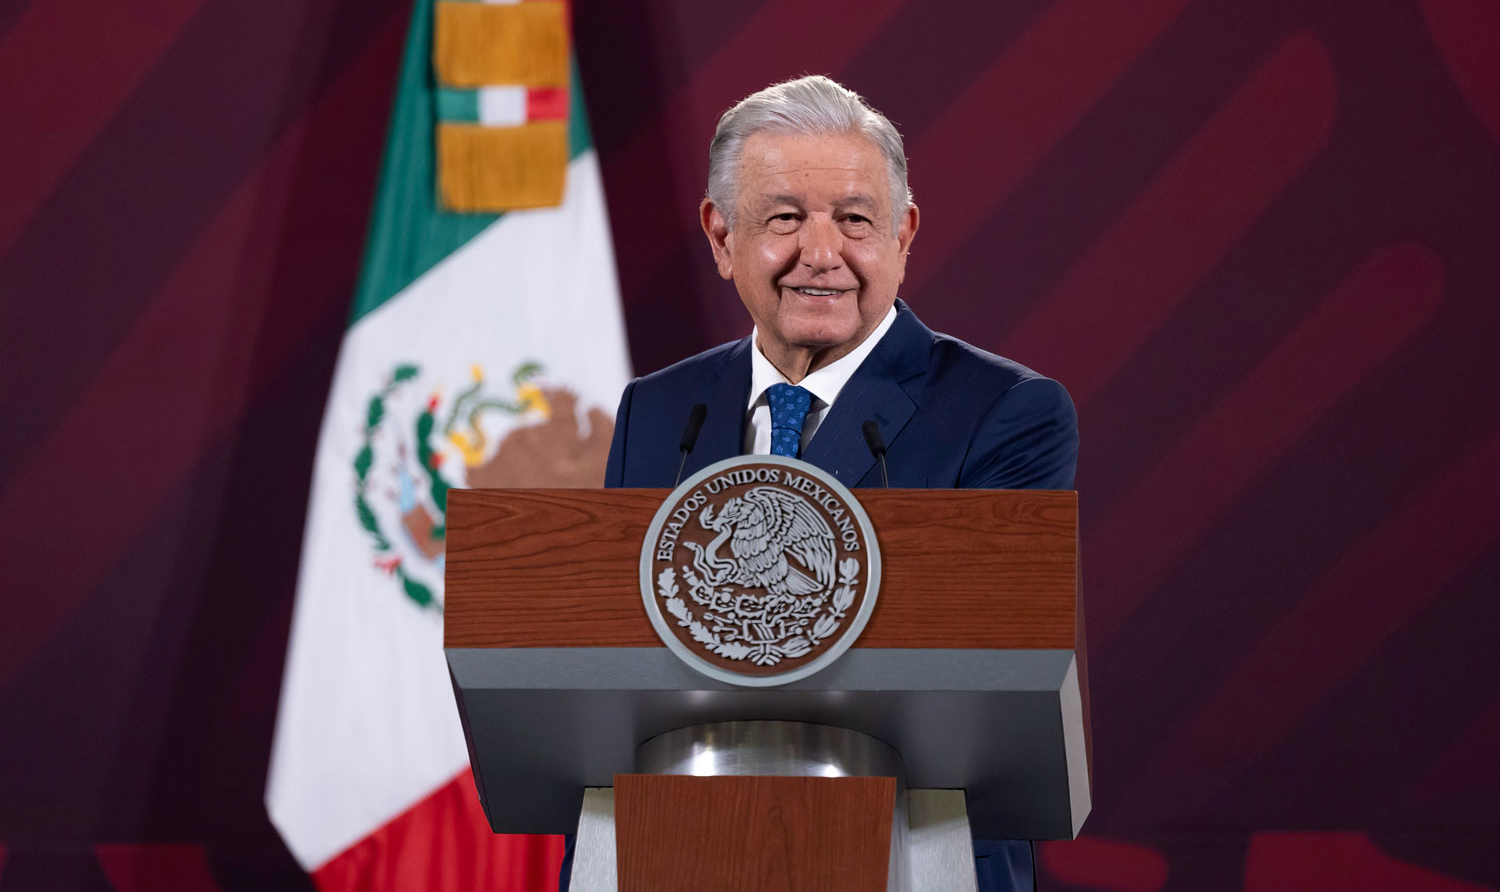 Encontro, realizado nesta quarta-feira (5), será um marco para trocar ideias acerca da compra e venda de produtos, afirma López Obrador